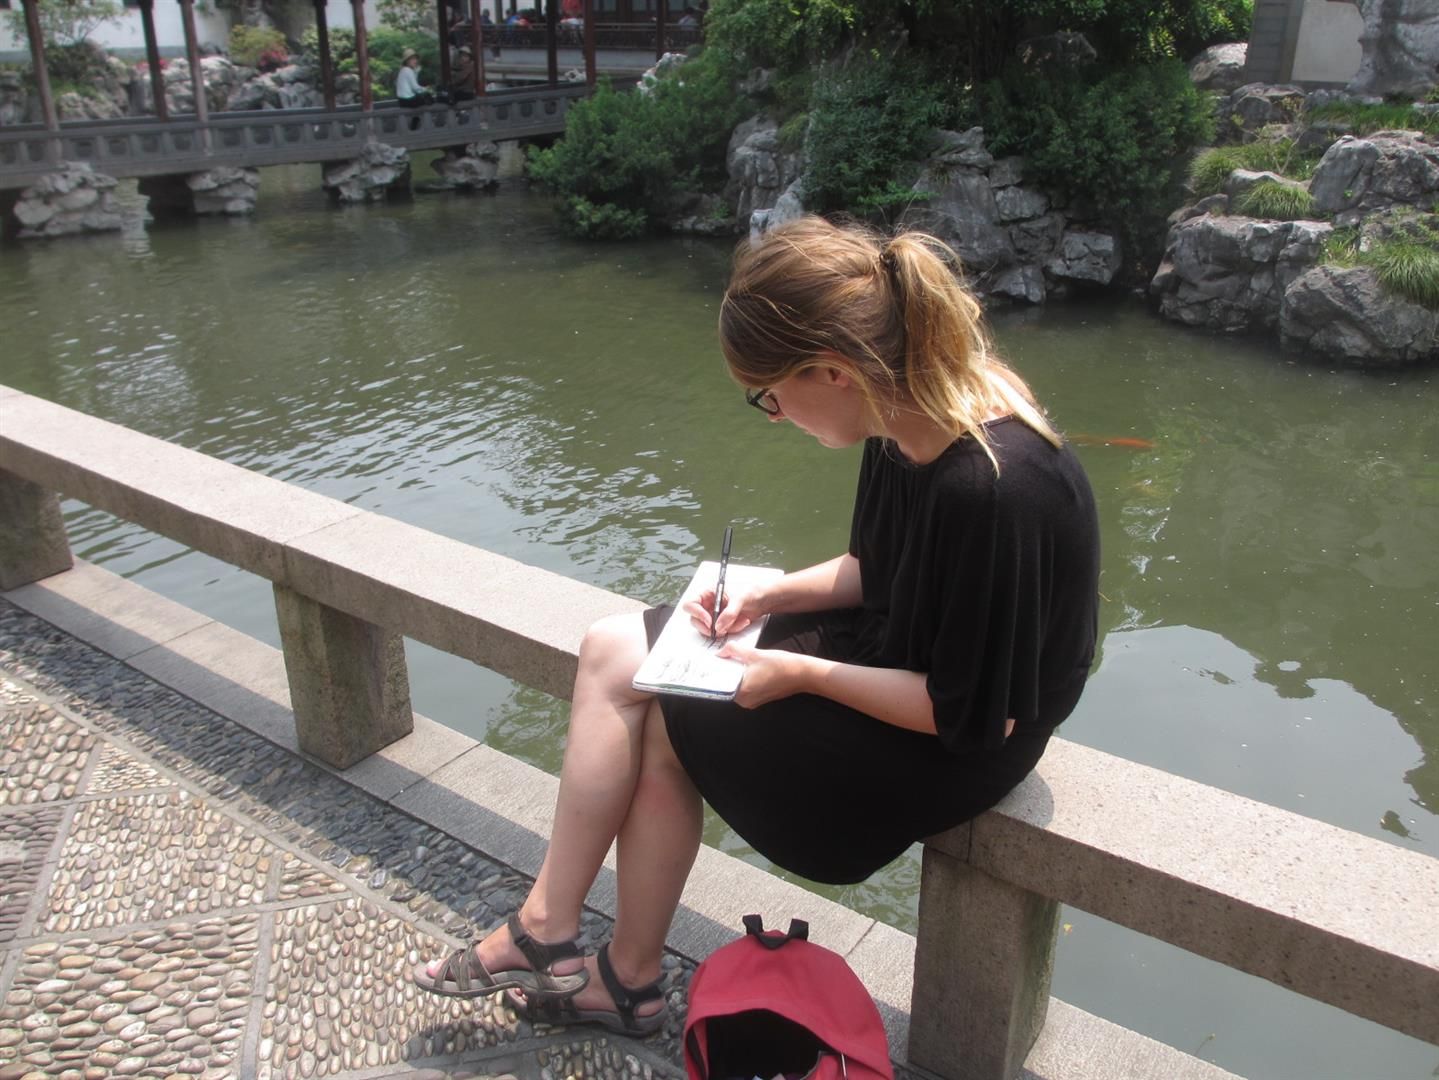  photo sketching-Yu-garden-shanghai_zps5jnvlccu.jpg